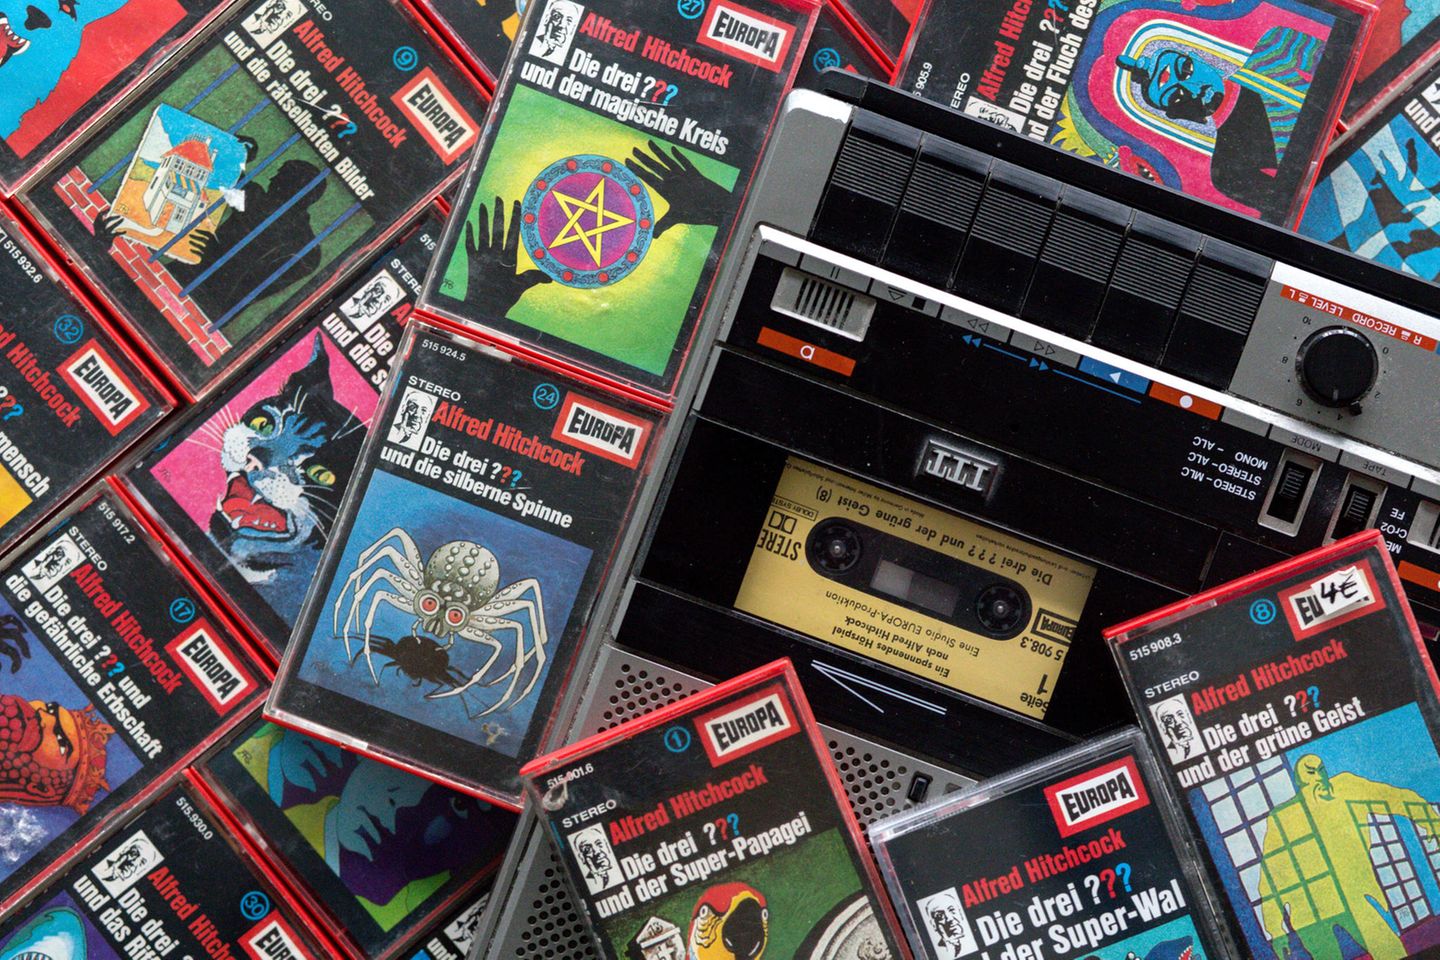 Zahlreiche Kassetten der Hörspielserie "Die drei Fragezeichen" liegen neben einem Kassettenrekorder.